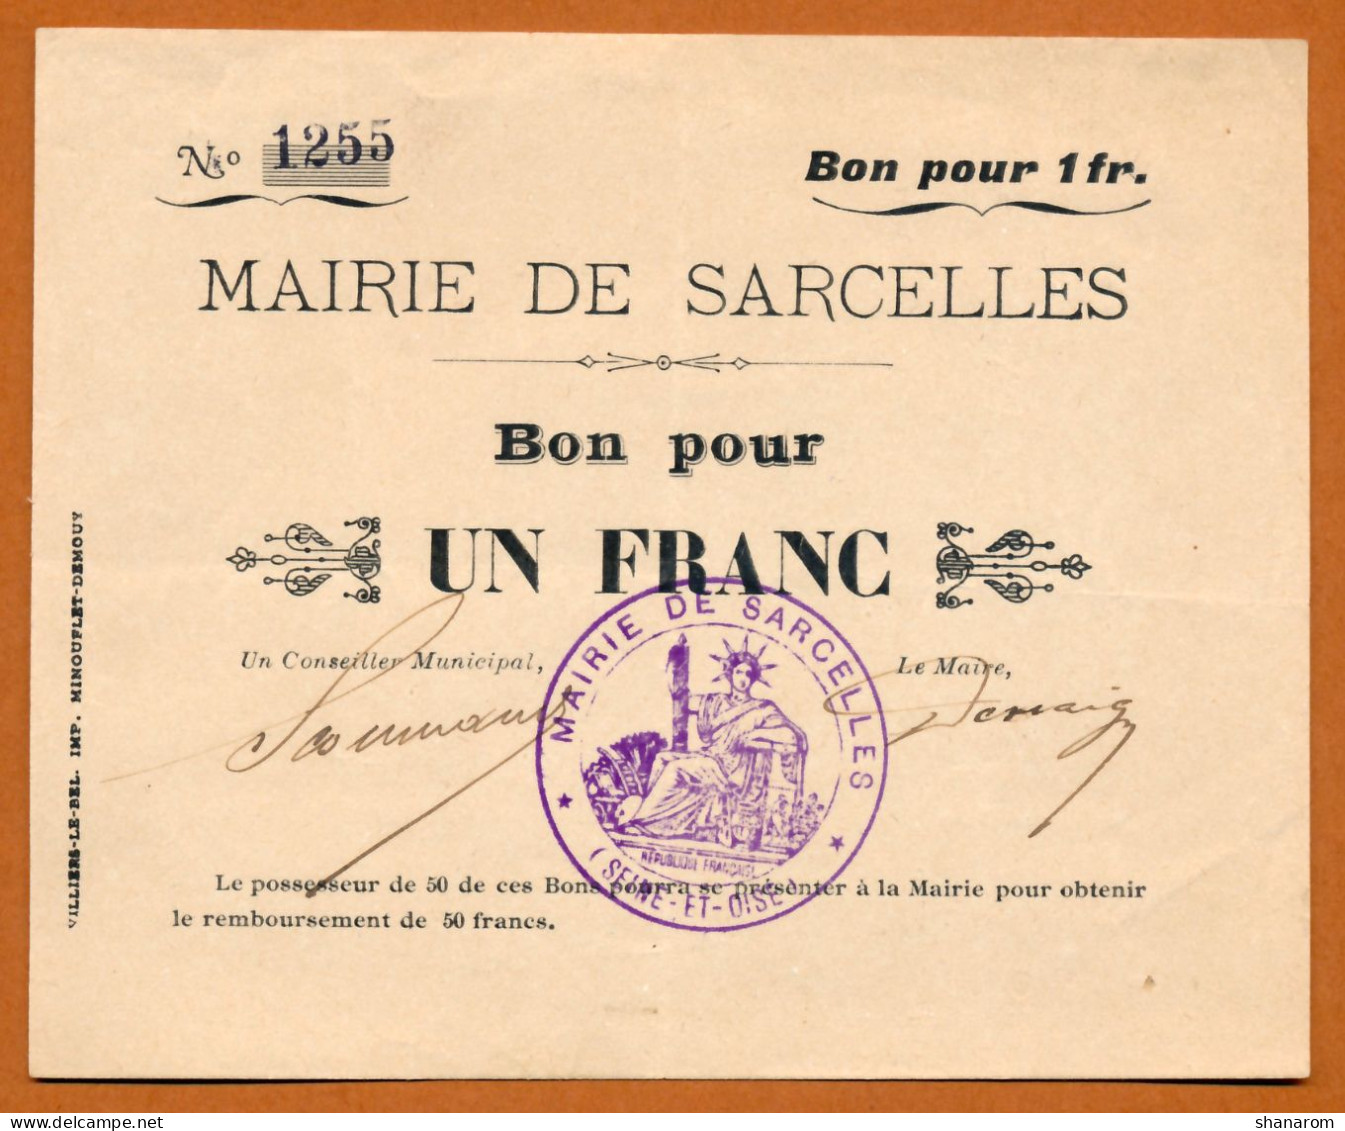 1914-1918 // VILLE DE SARCELLES (Val D'Oise 95) // MAIRIE // Bon Pour Un Franc - Bons & Nécessité